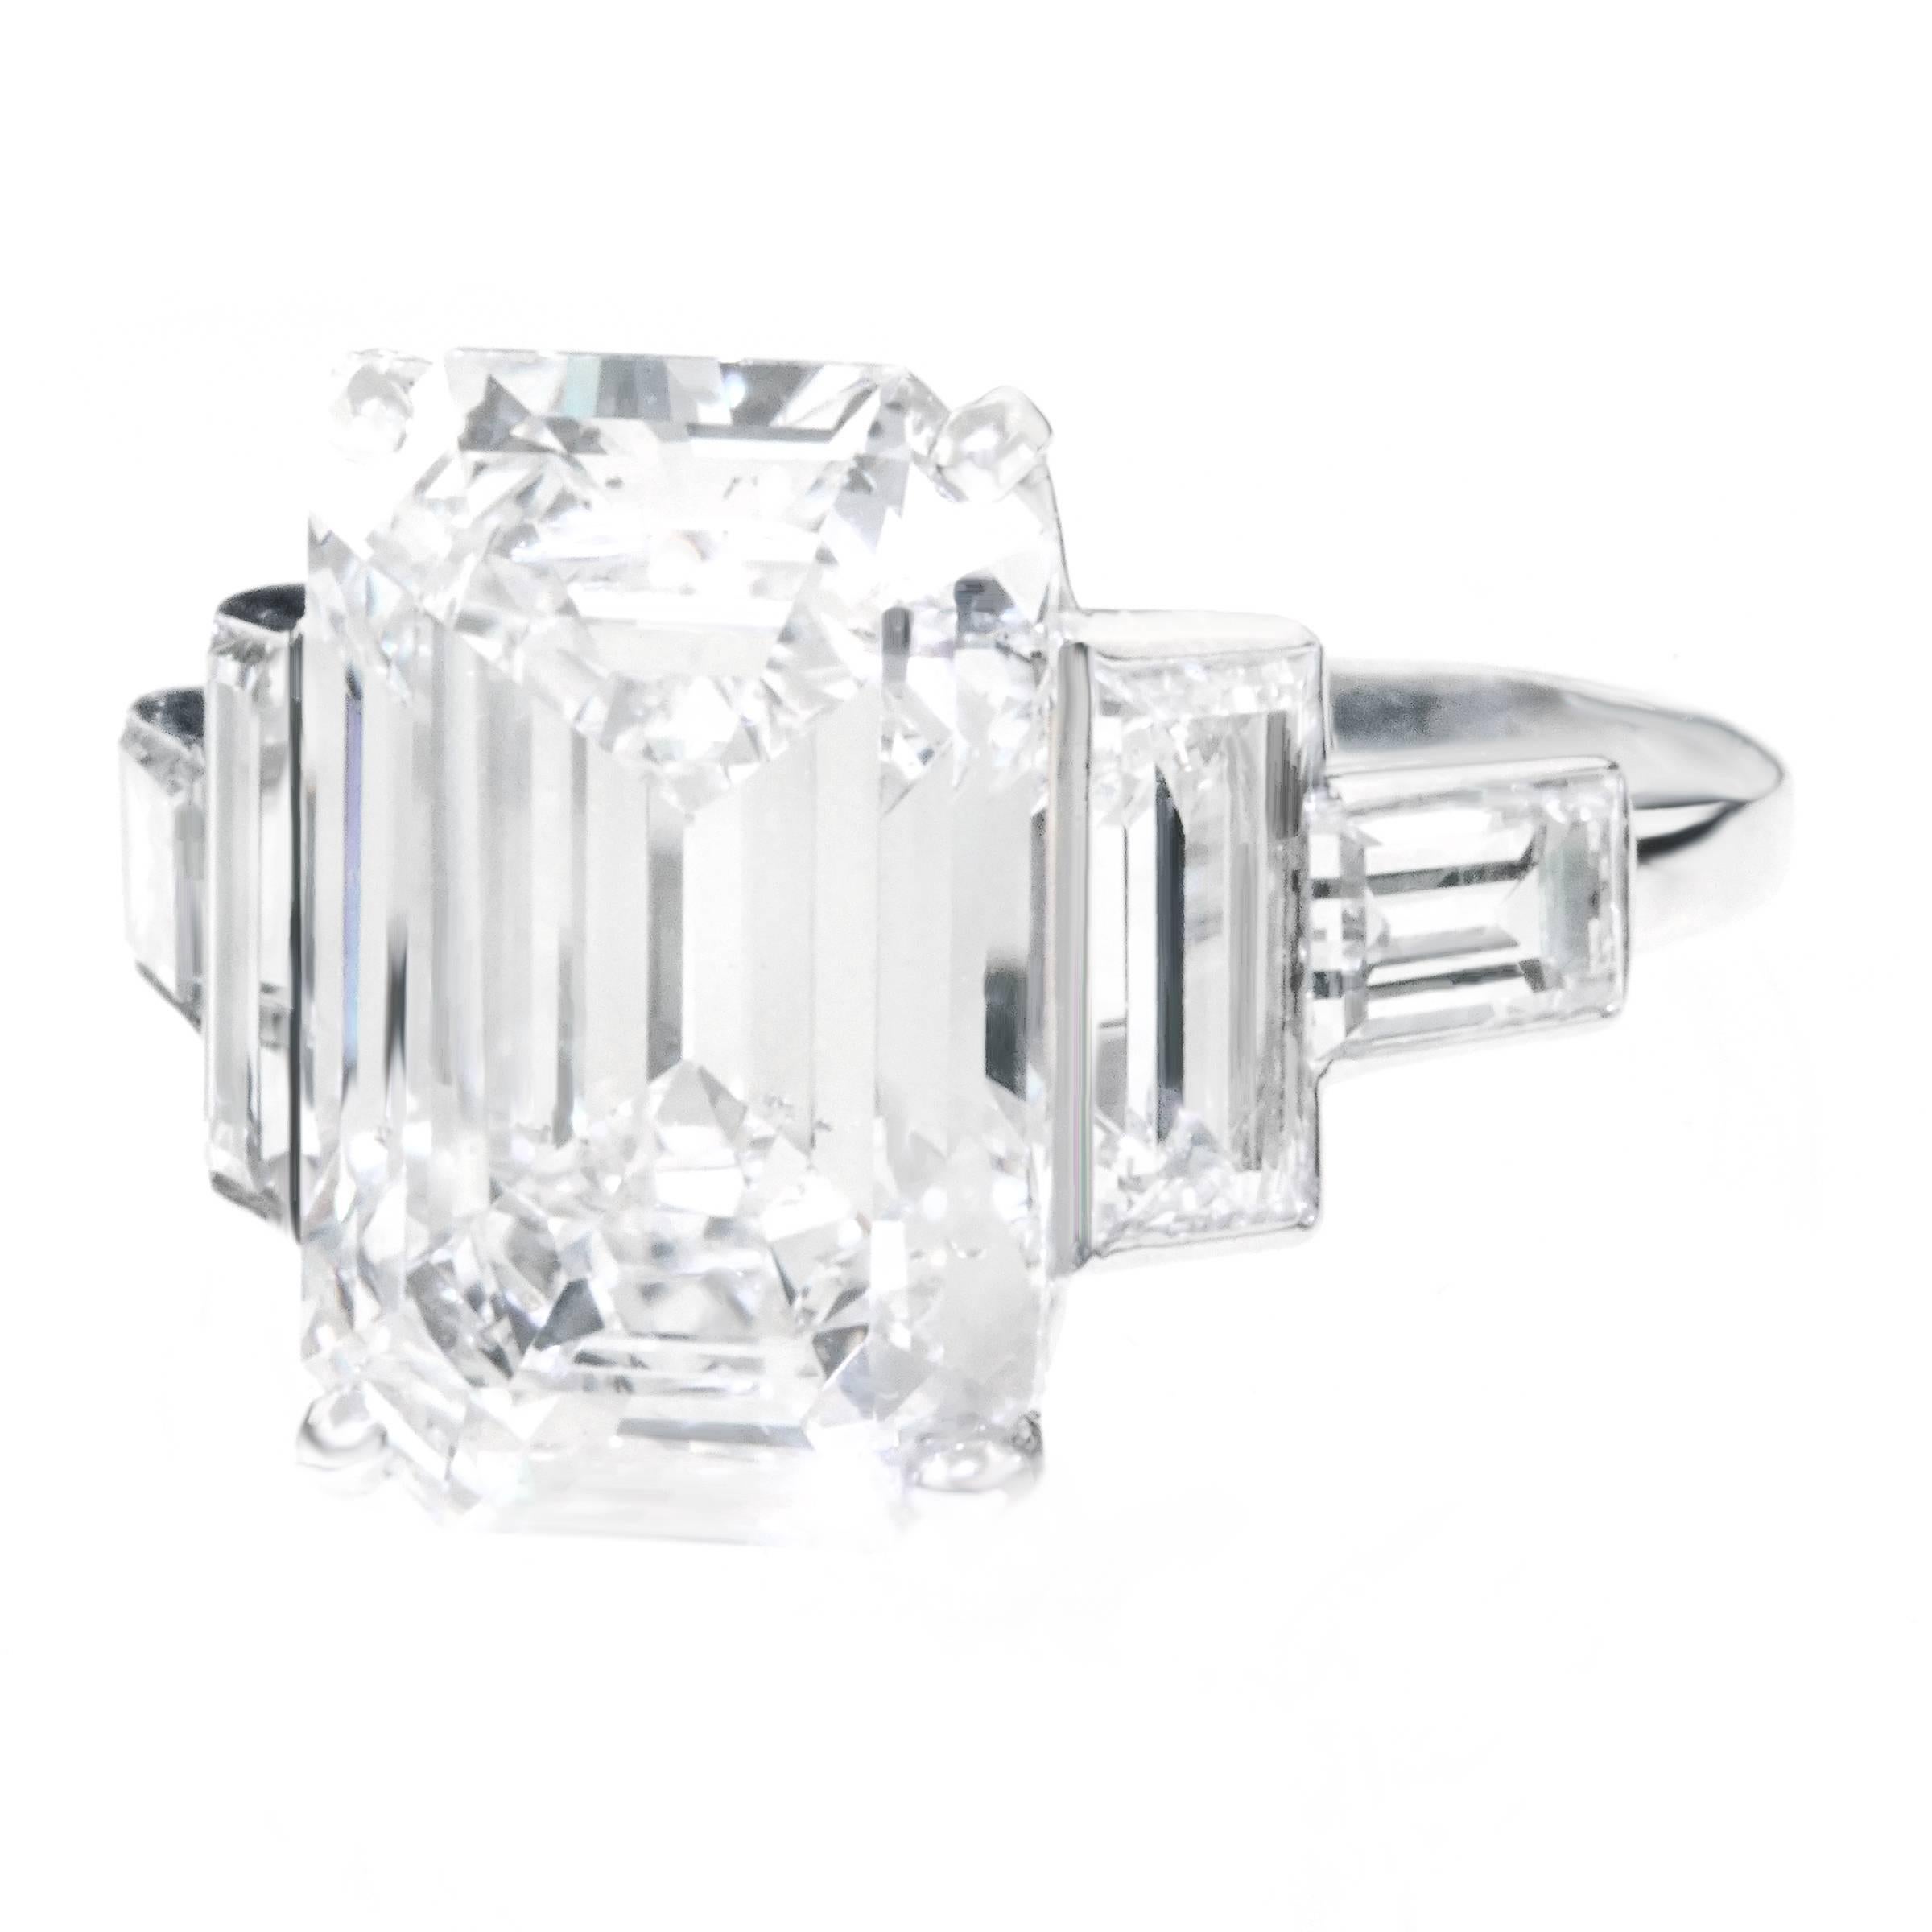 Spectacular 6.64 Carat Art Deco Diamond Ring in Platinum GIA 1